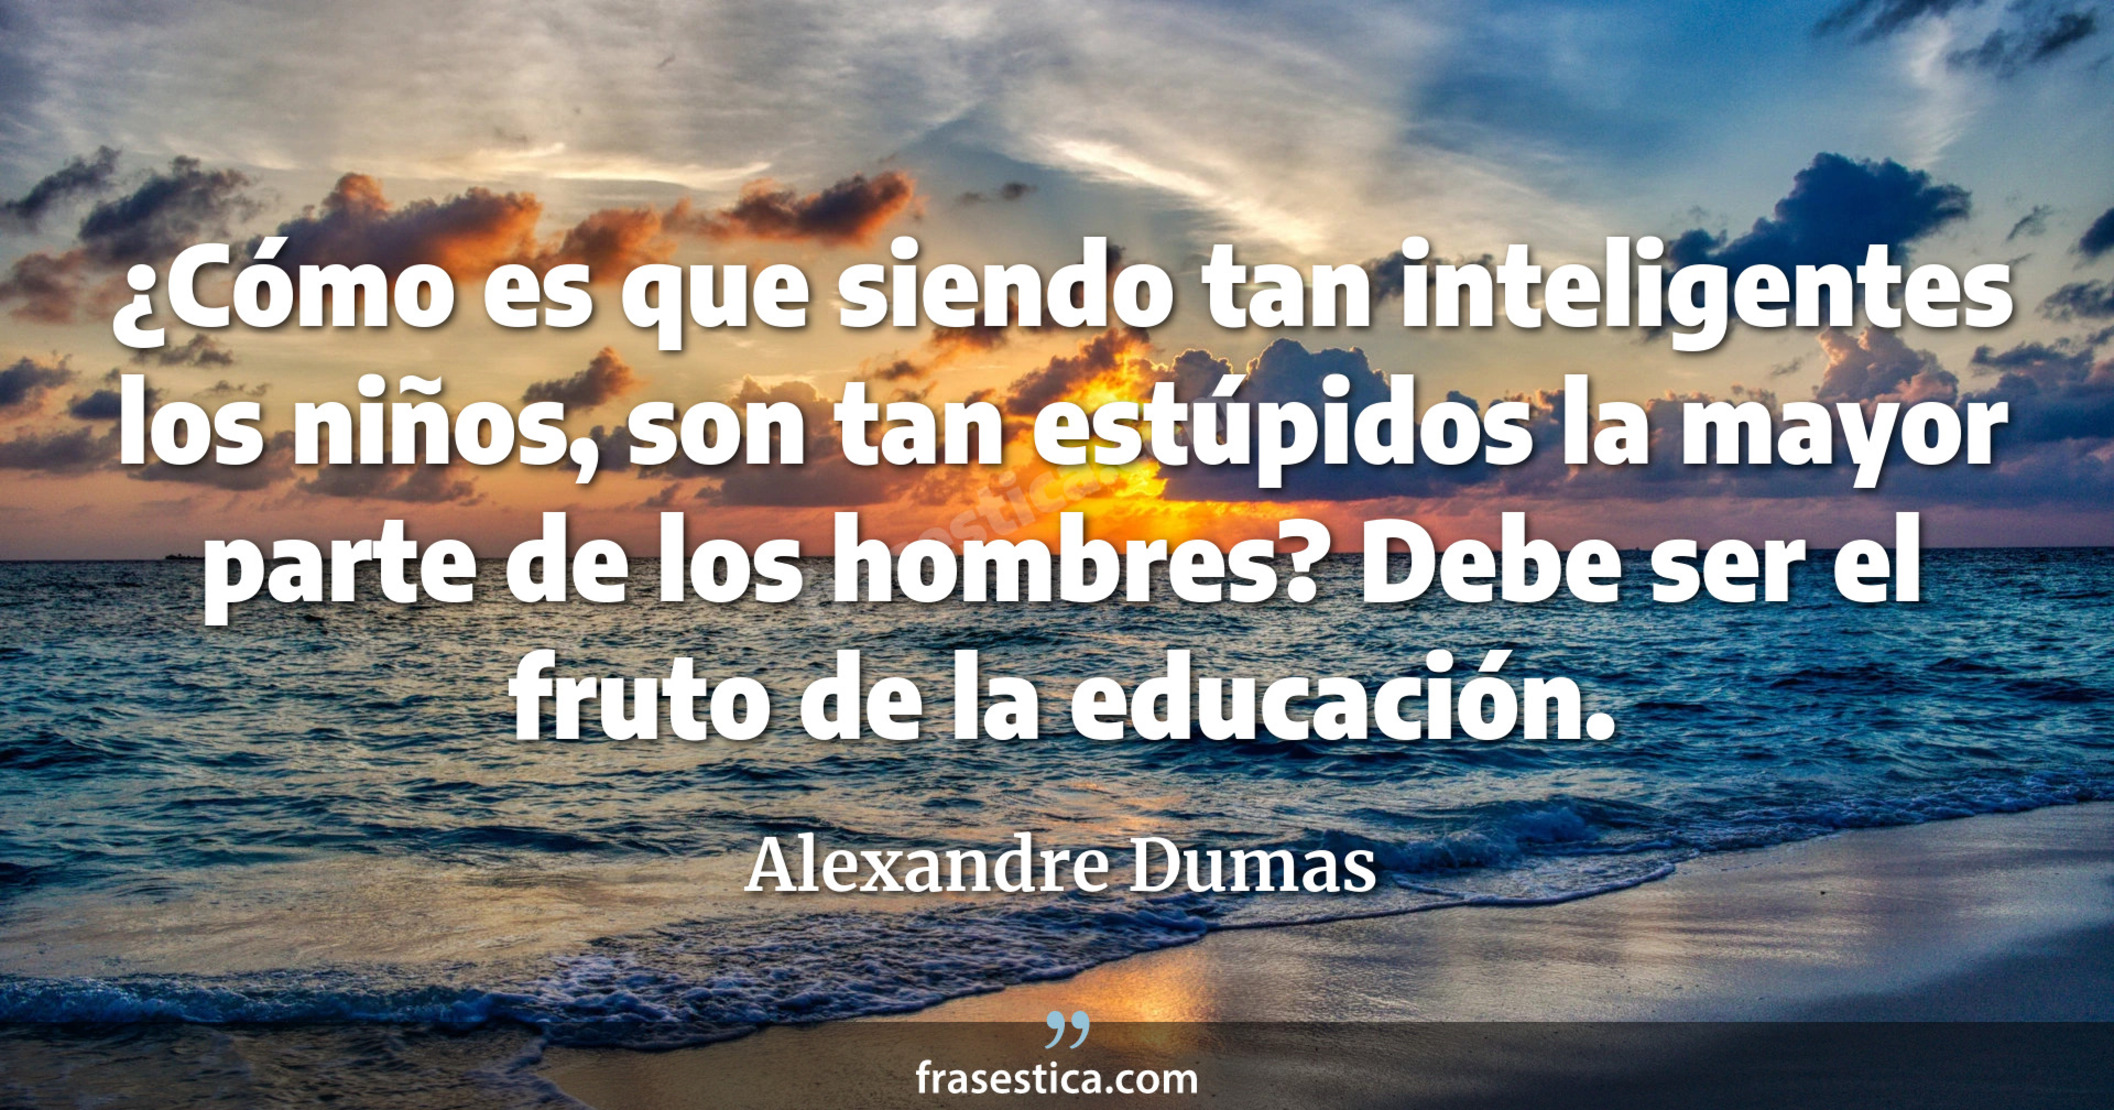 ¿Cómo es que siendo tan inteligentes los niños, son tan estúpidos la mayor parte de los hombres? Debe ser el fruto de la educación. - Alexandre Dumas